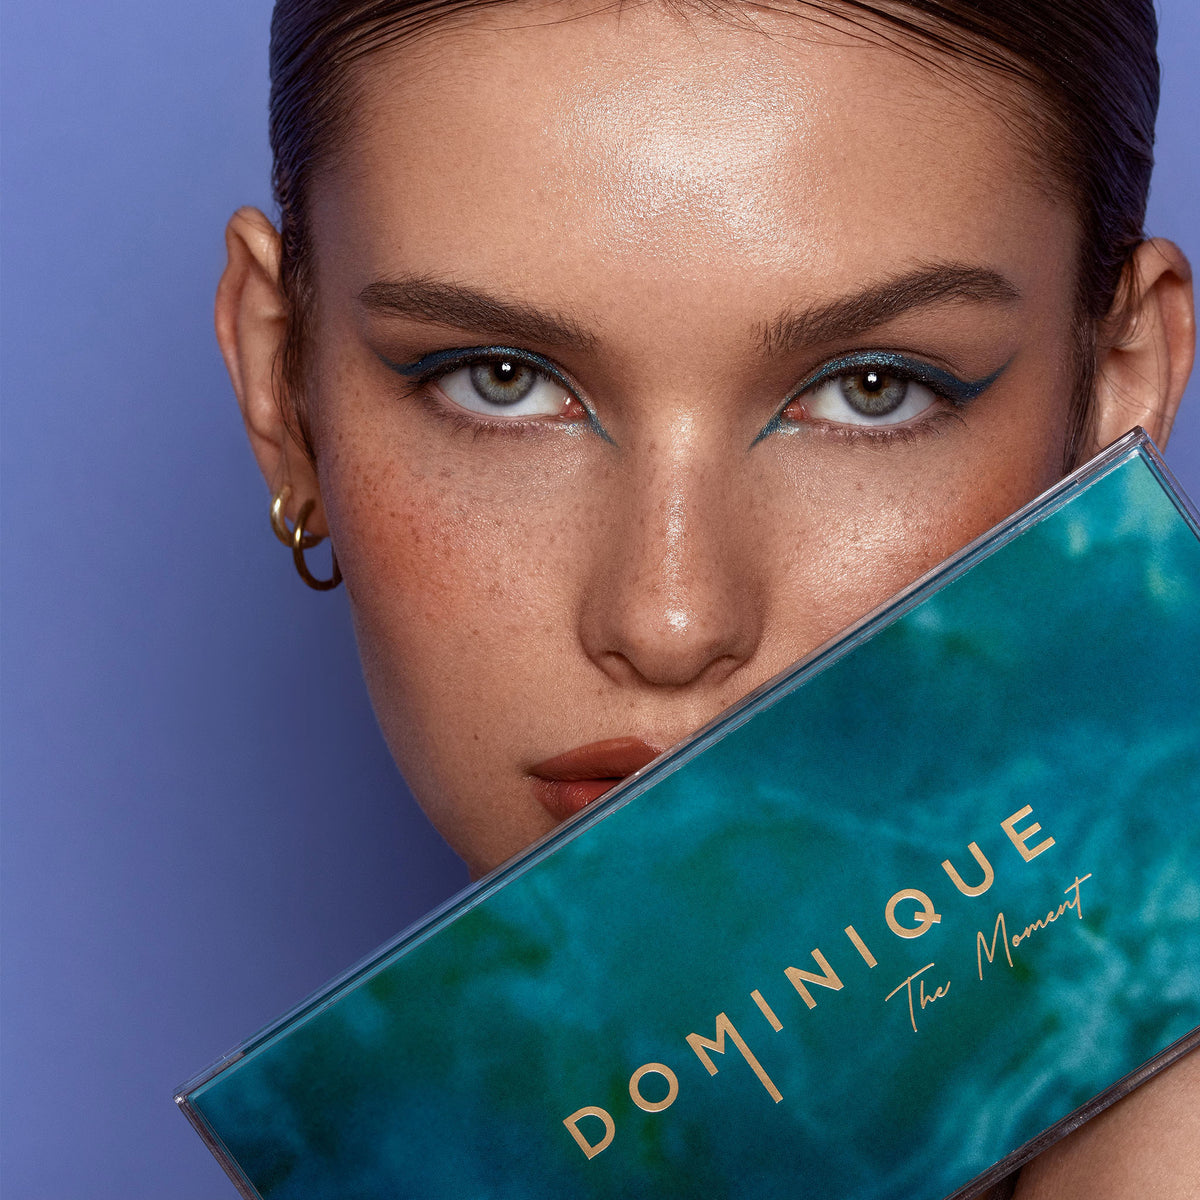 Dominique Cosmetics | The Moment Palette